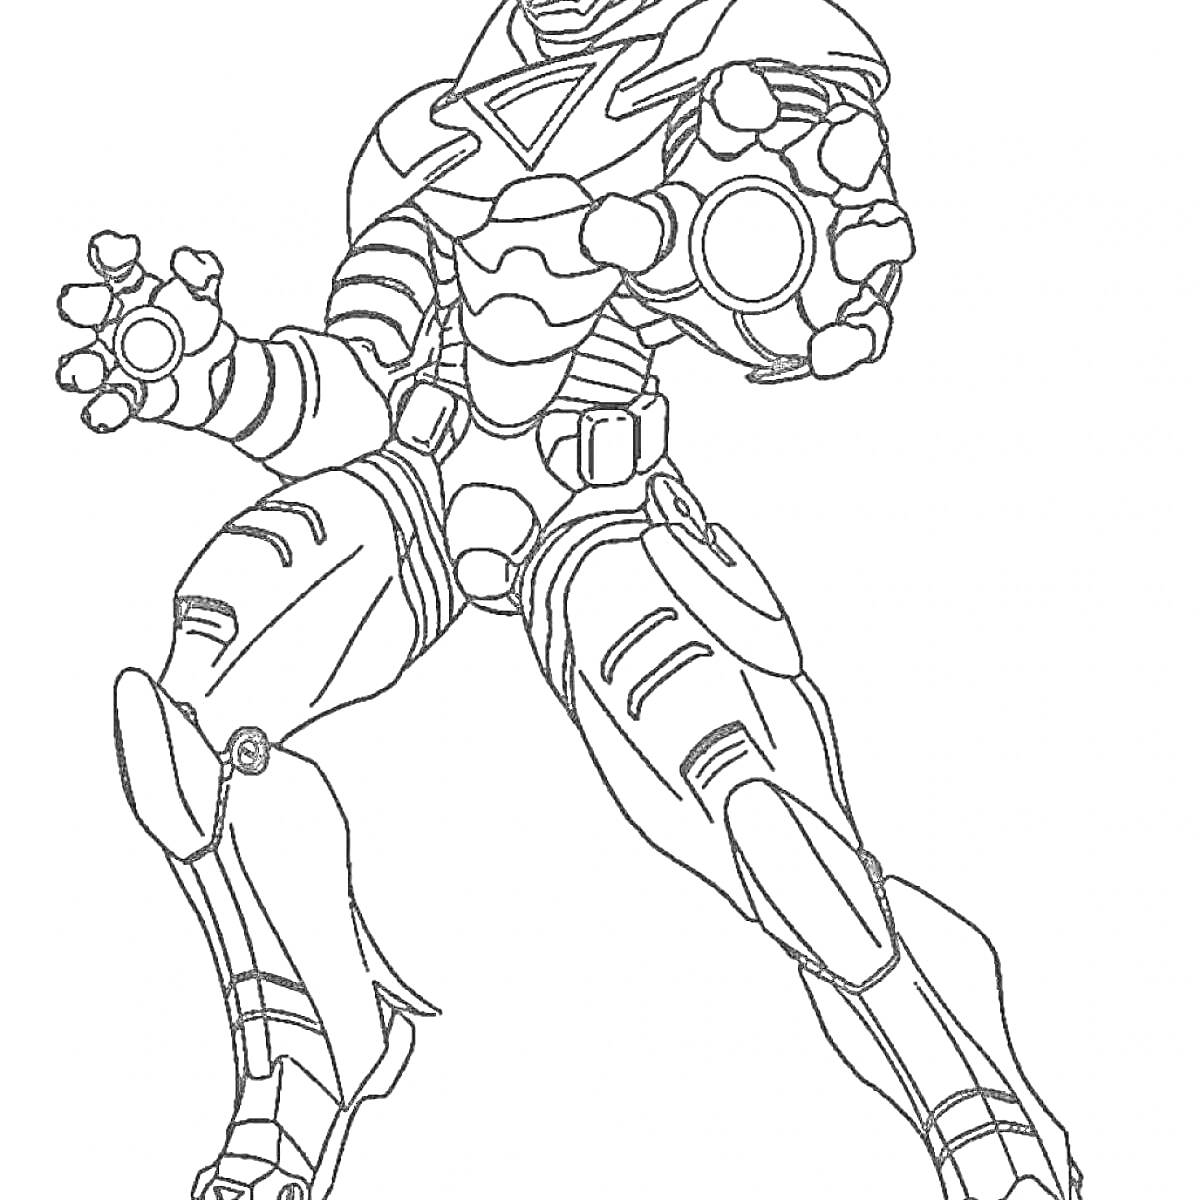 Раскраска Железный Человек в боевой позе с вытянутой вперед рукой и распущенными пальцами